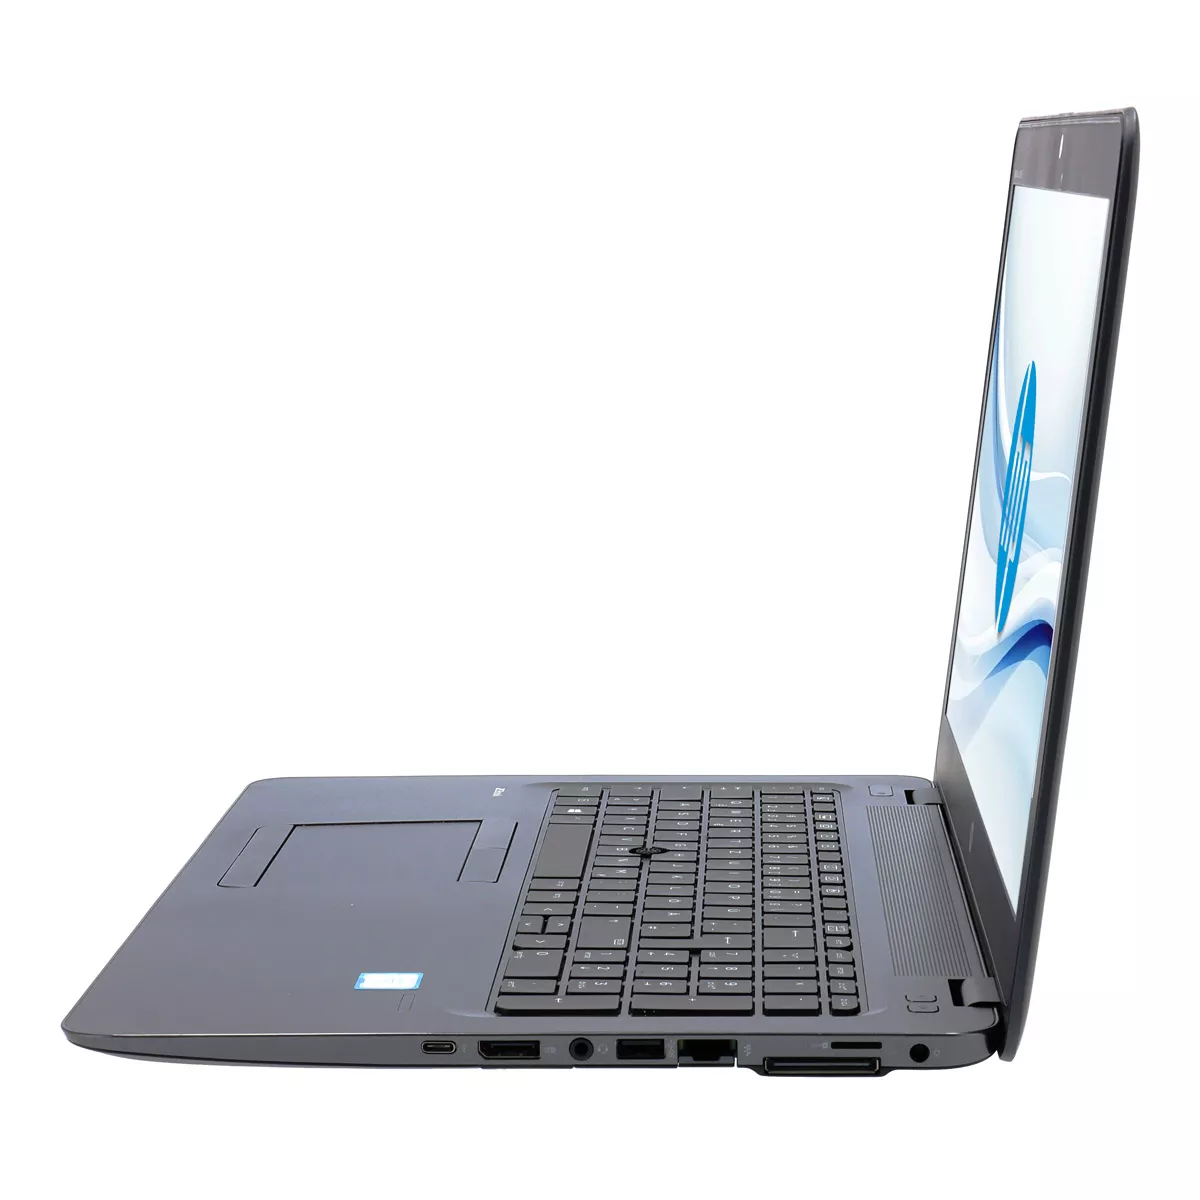 HP ZBook 15u G3 Core i7 6500U AMD FirePro W4190M 32 GB 512 GB M.2 SSD